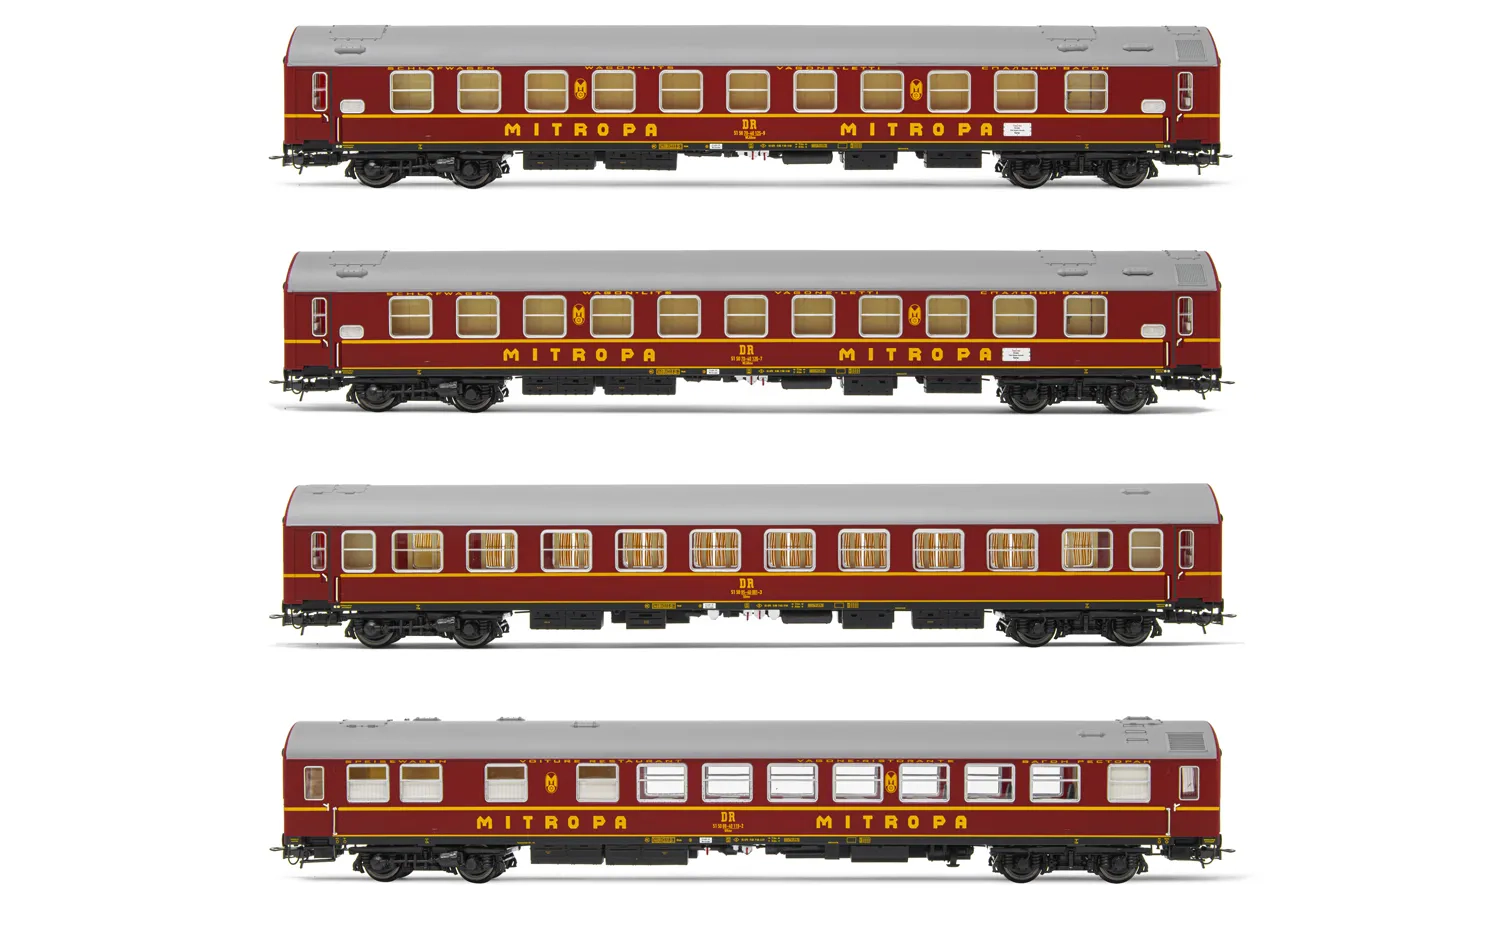 DR, 4-tlg. Set OSShD Typ B Reisezugwagen „Tourex” in roter Lackierung mit gelben Streifen, bestehend aus 2 x Schlafwagen WLABme, 1 x SDme und 1 x Speisewagen Wrme, Ep. IV